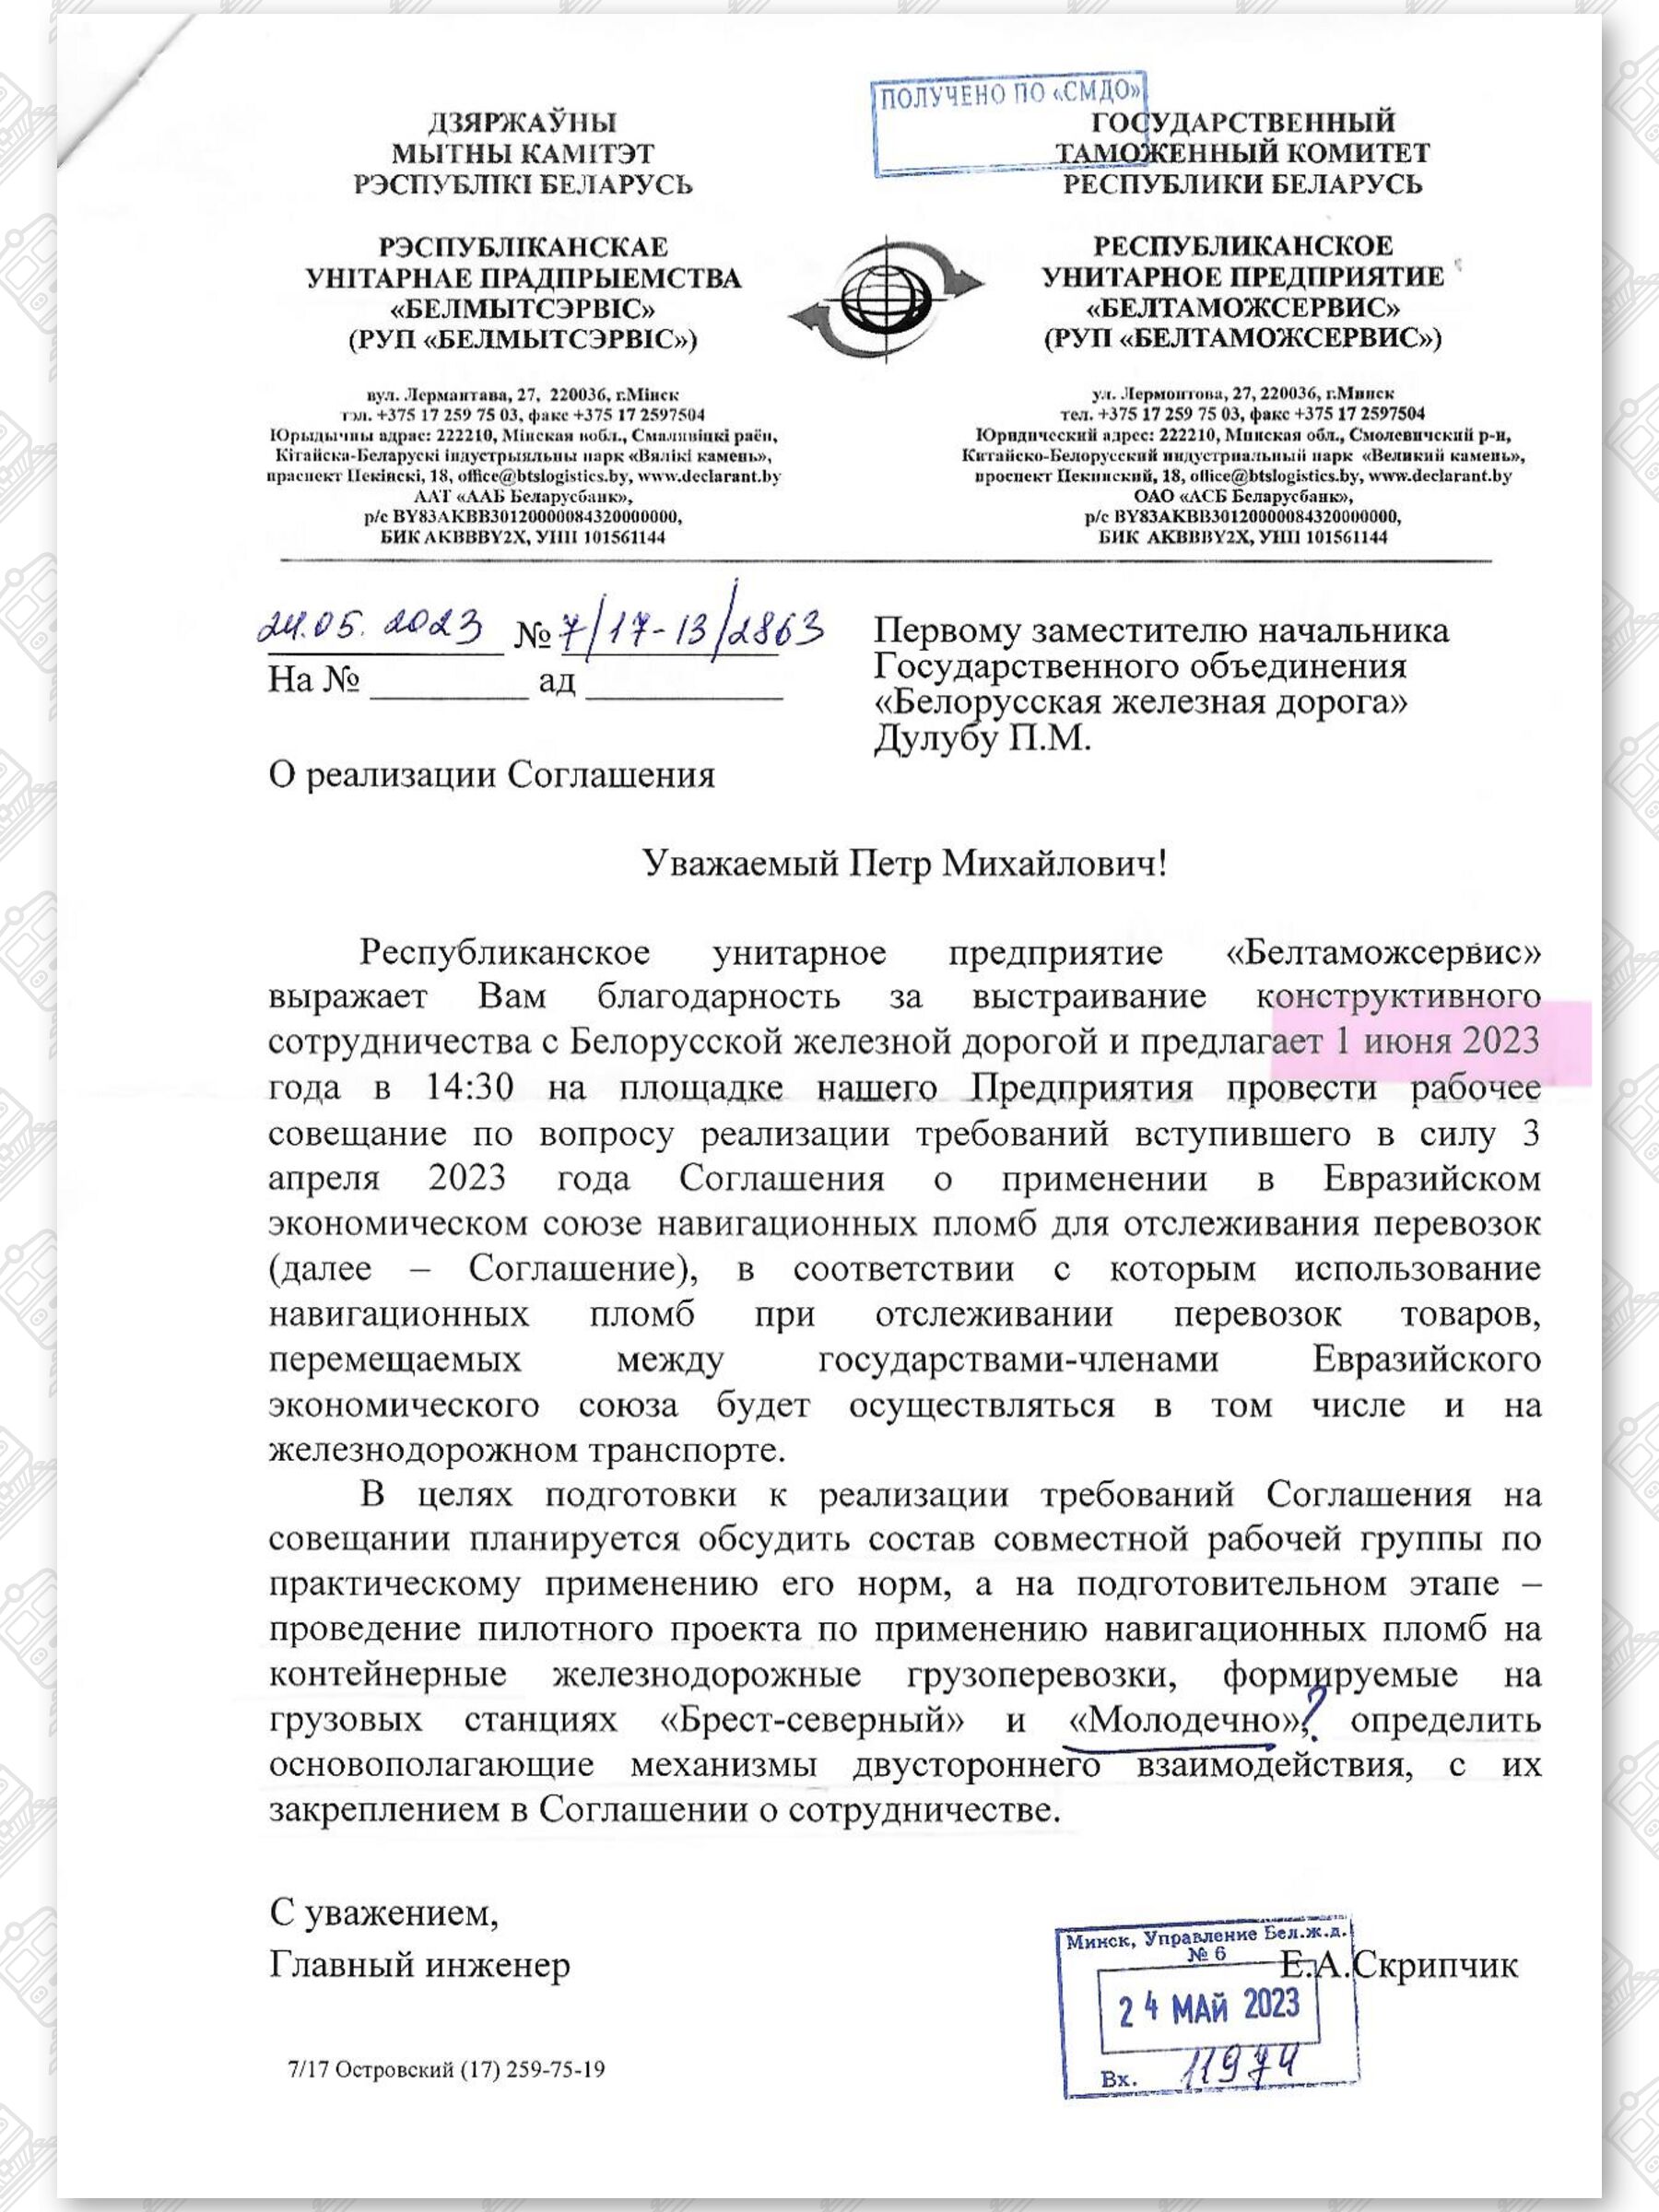 Письмо РУП «Белтаможсервис» в БЖД «О реализации Соглашения» от 24.05.2023 №7/17-13/2863